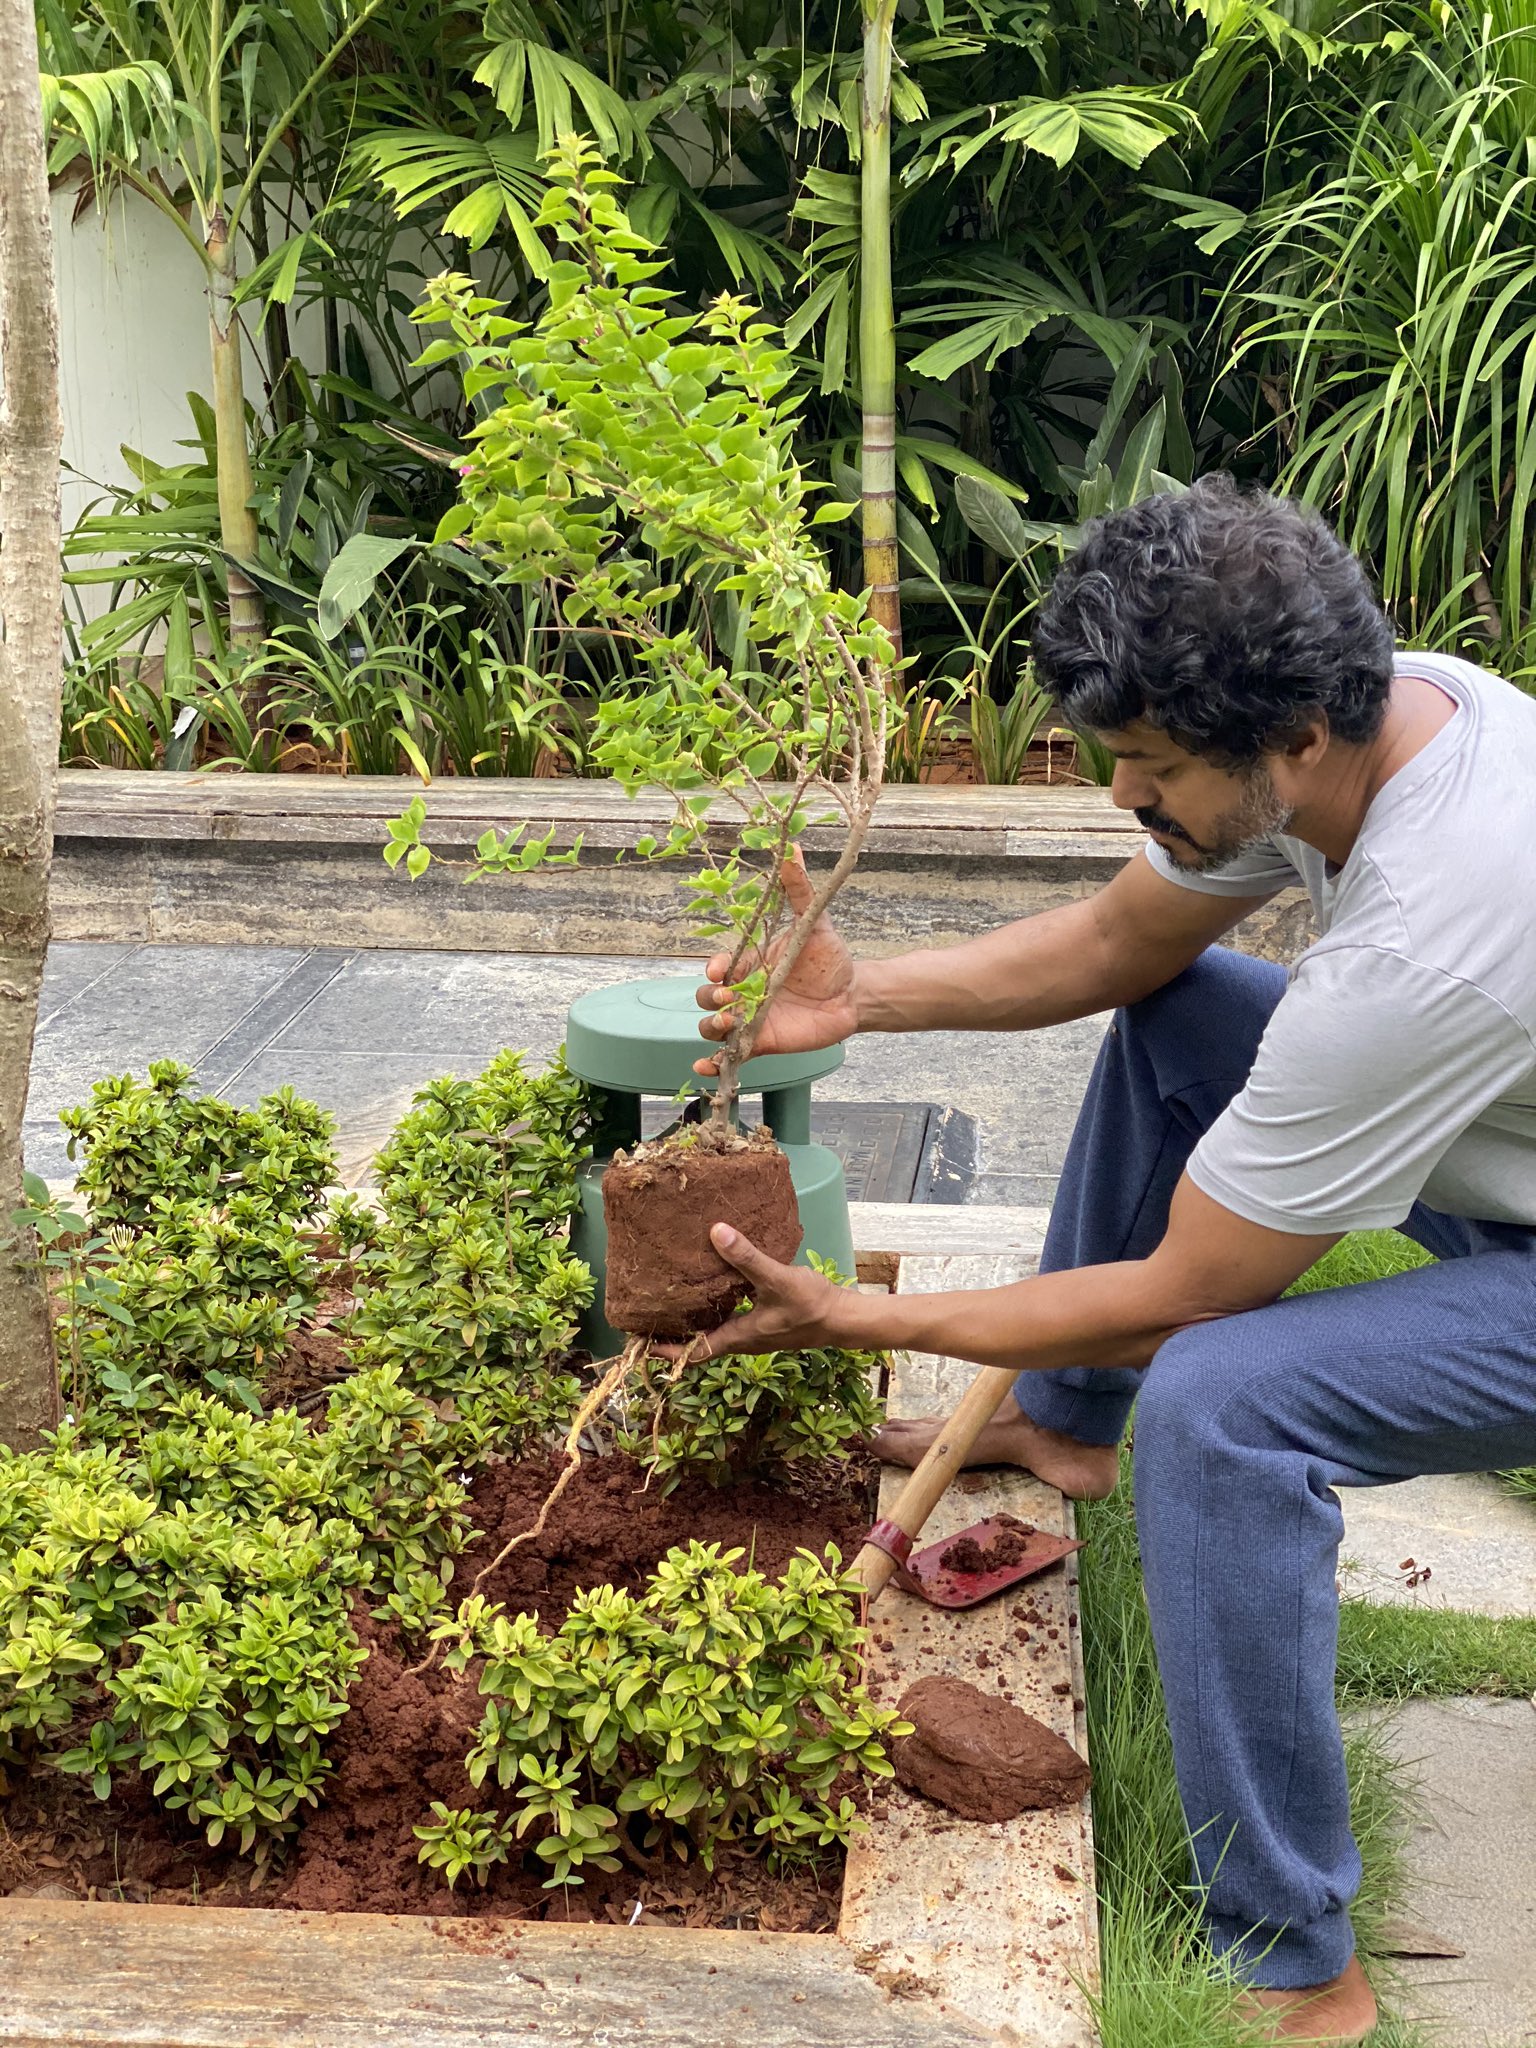 El comandante Vijay está plantando árboles jóvenes